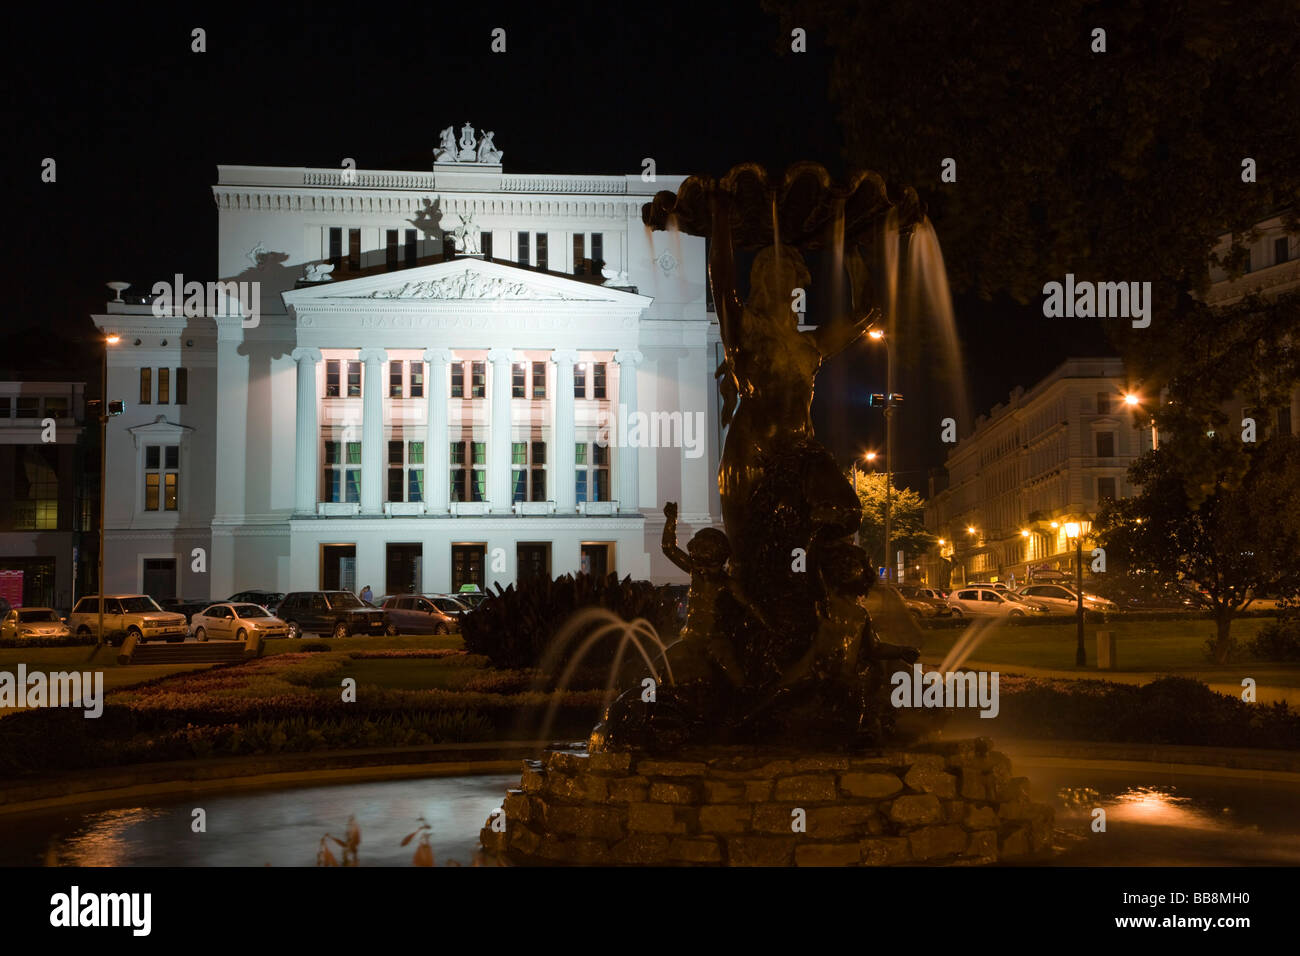 Latvian National Opera, Latvijas Nacionala Opera, and park at night, Riga, Latvia, Baltic region Stock Photo